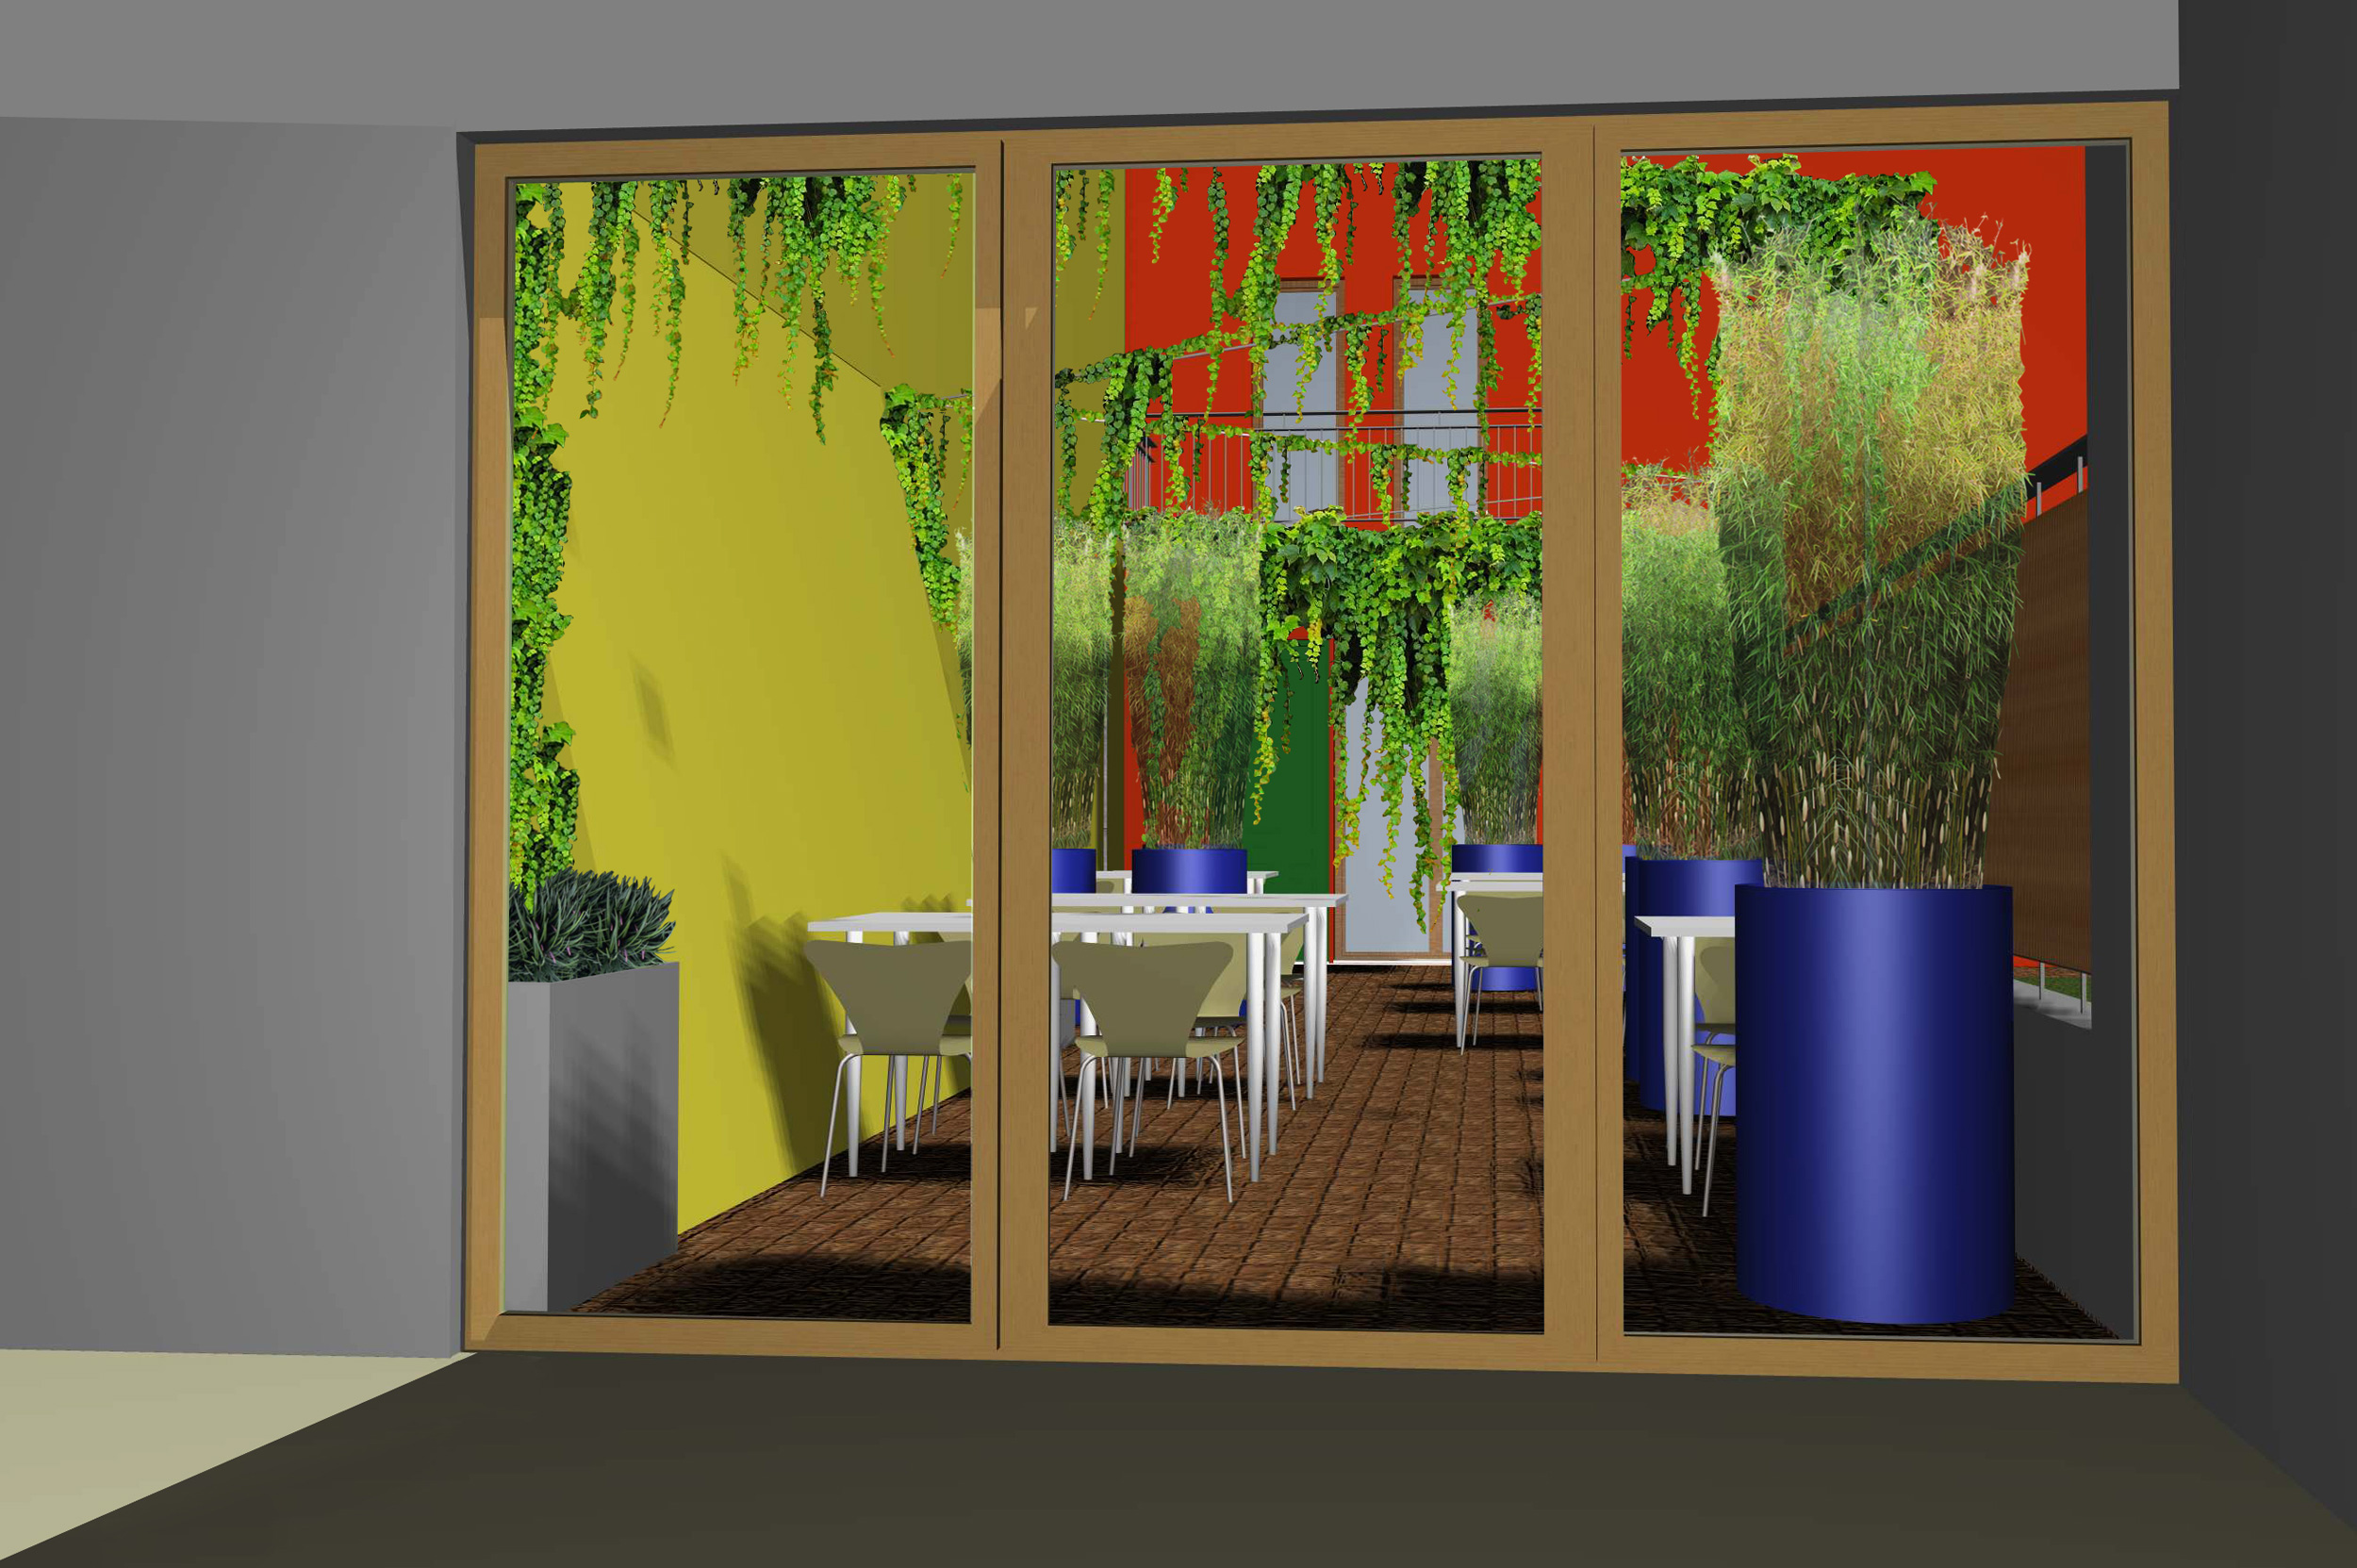 spazio esterno, area relax, fioriere per bambù, sapore esotico, phyllostachys, bidoni riciclati